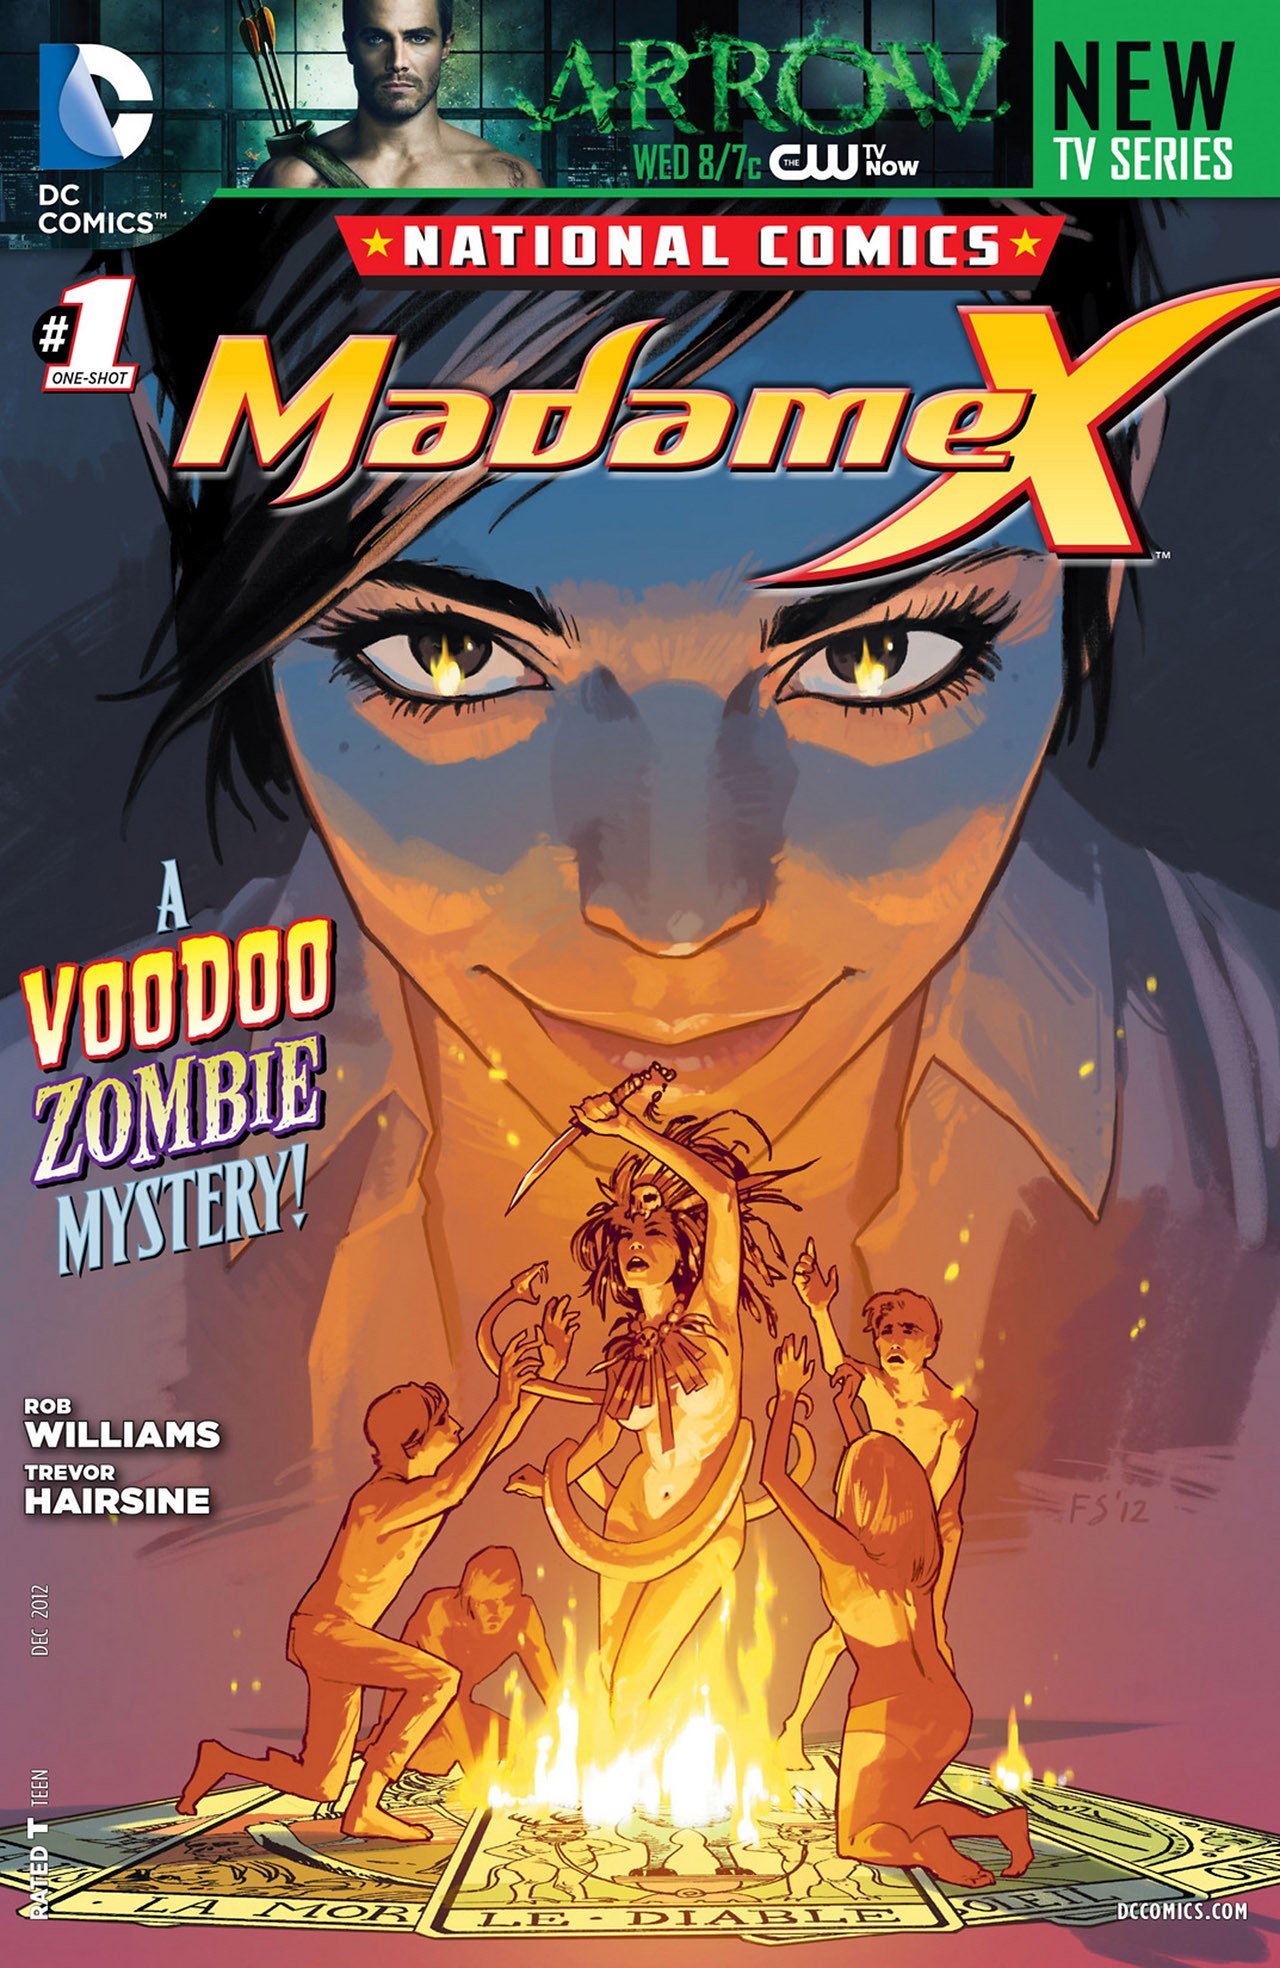 National Comics: Madame X Vol. 1 #1